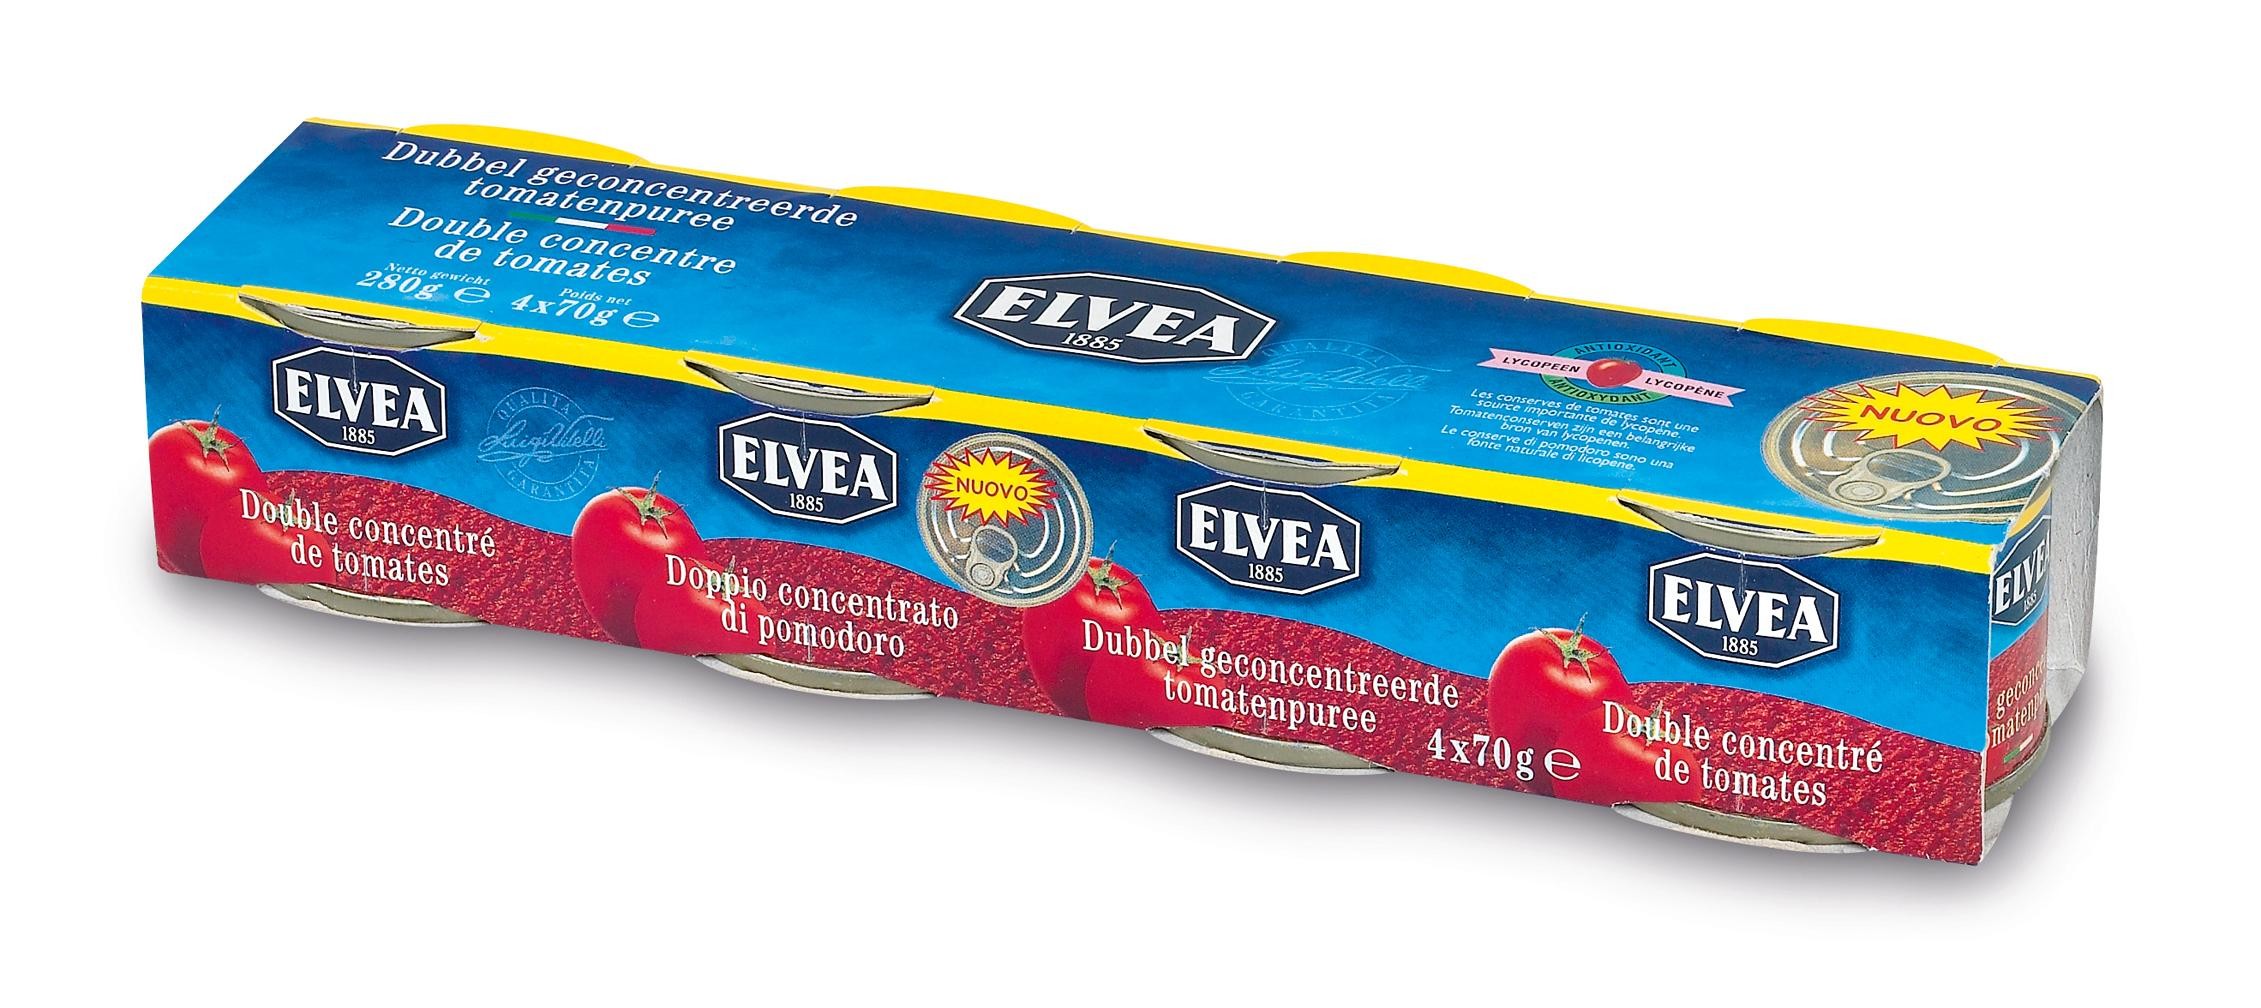 Elvea double concentré de tomates (4x70gr) 28/30%